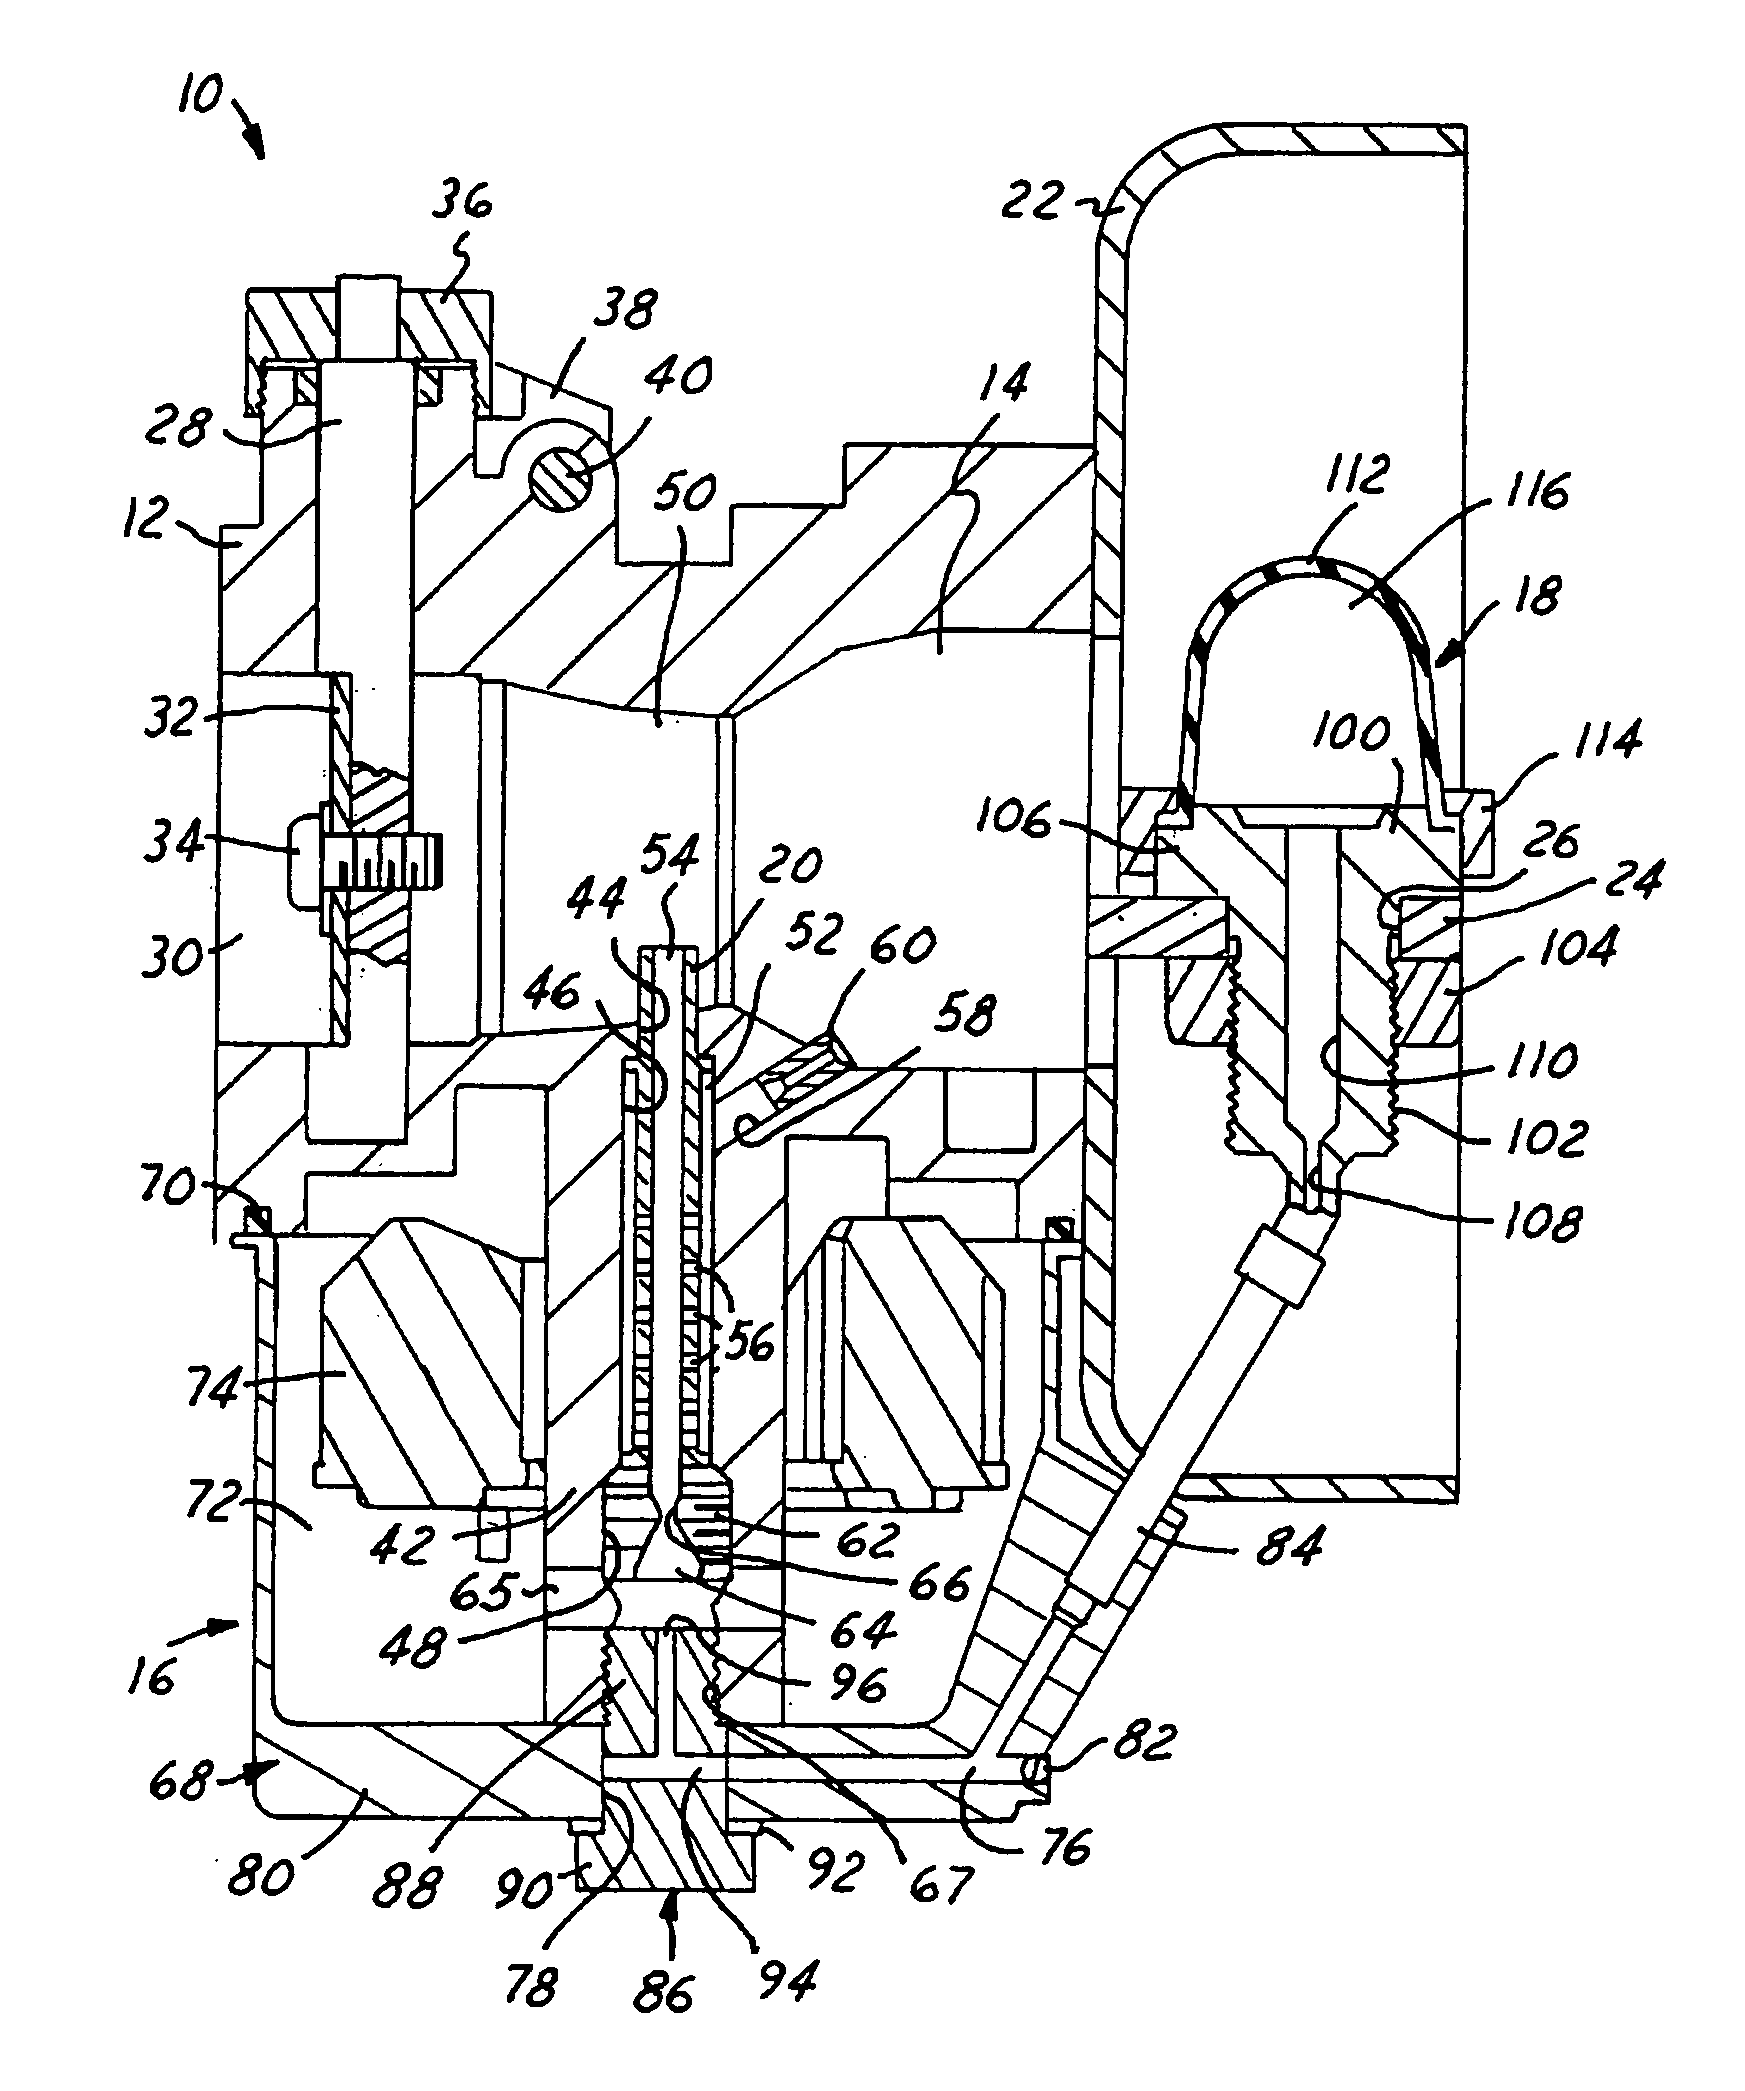 Priming system for a float bowl carburetor